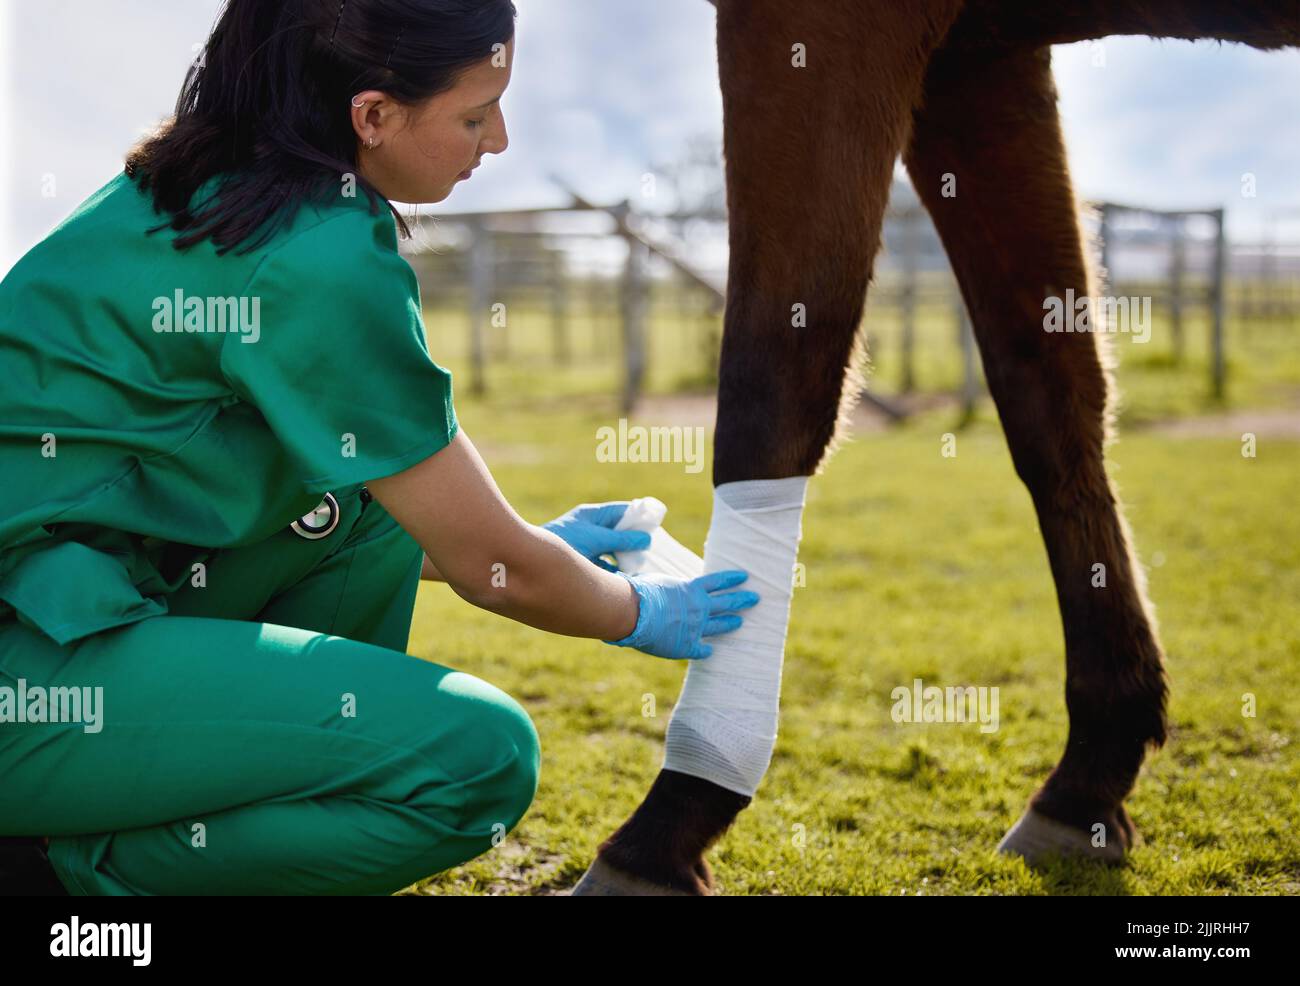 Tierärzte müssen auch eine Leidenschaft für die Tierhilfe zeigen. Ein junger Tierarzt legt auf einem Bauernhof einen Verband auf ein Pferd. Stockfoto